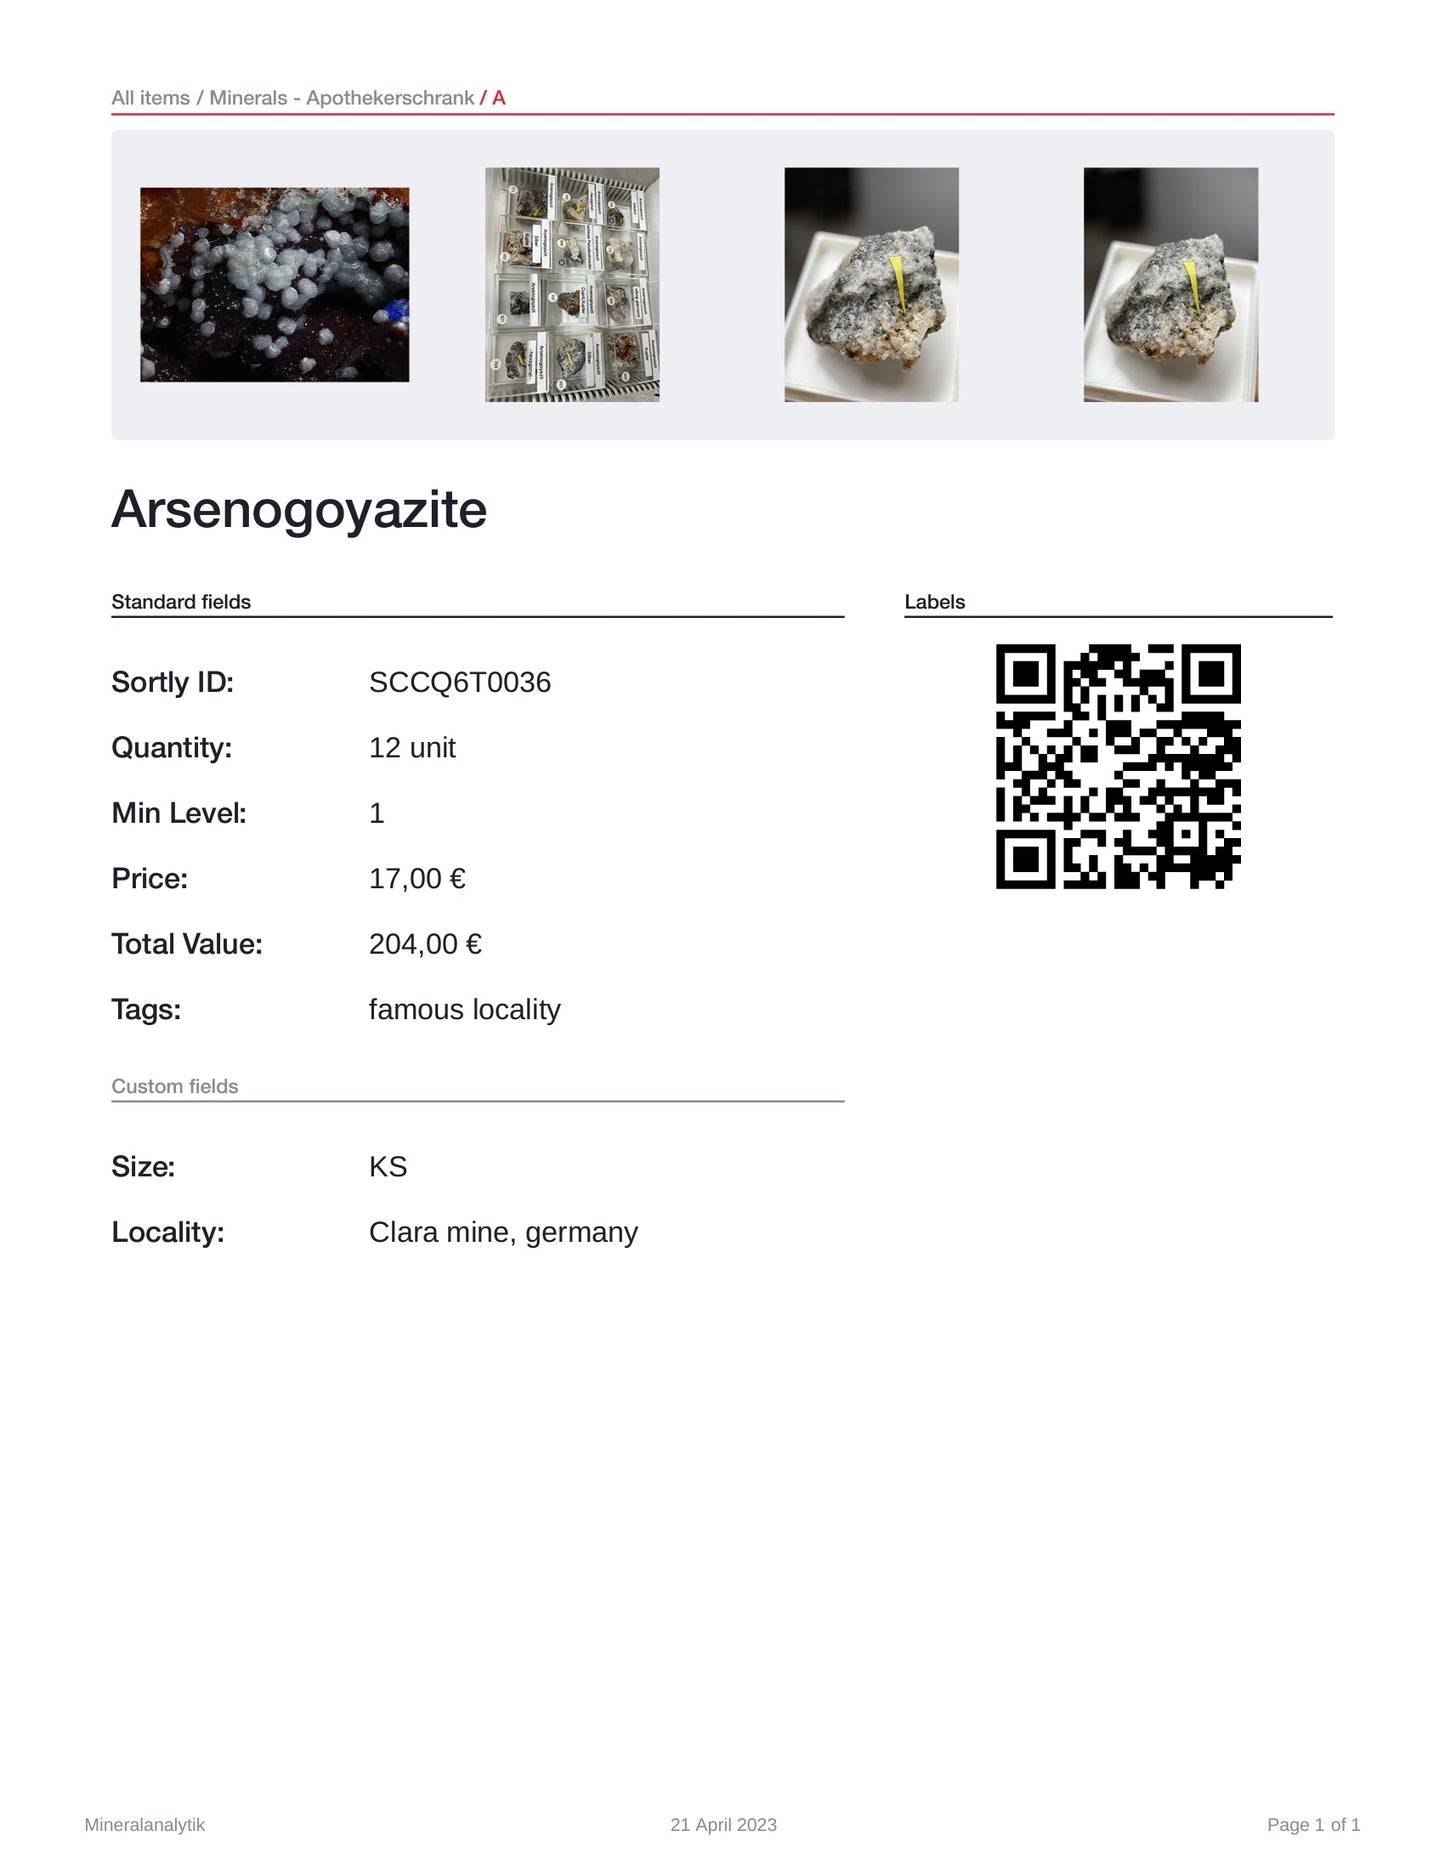 Arsenogoyazite